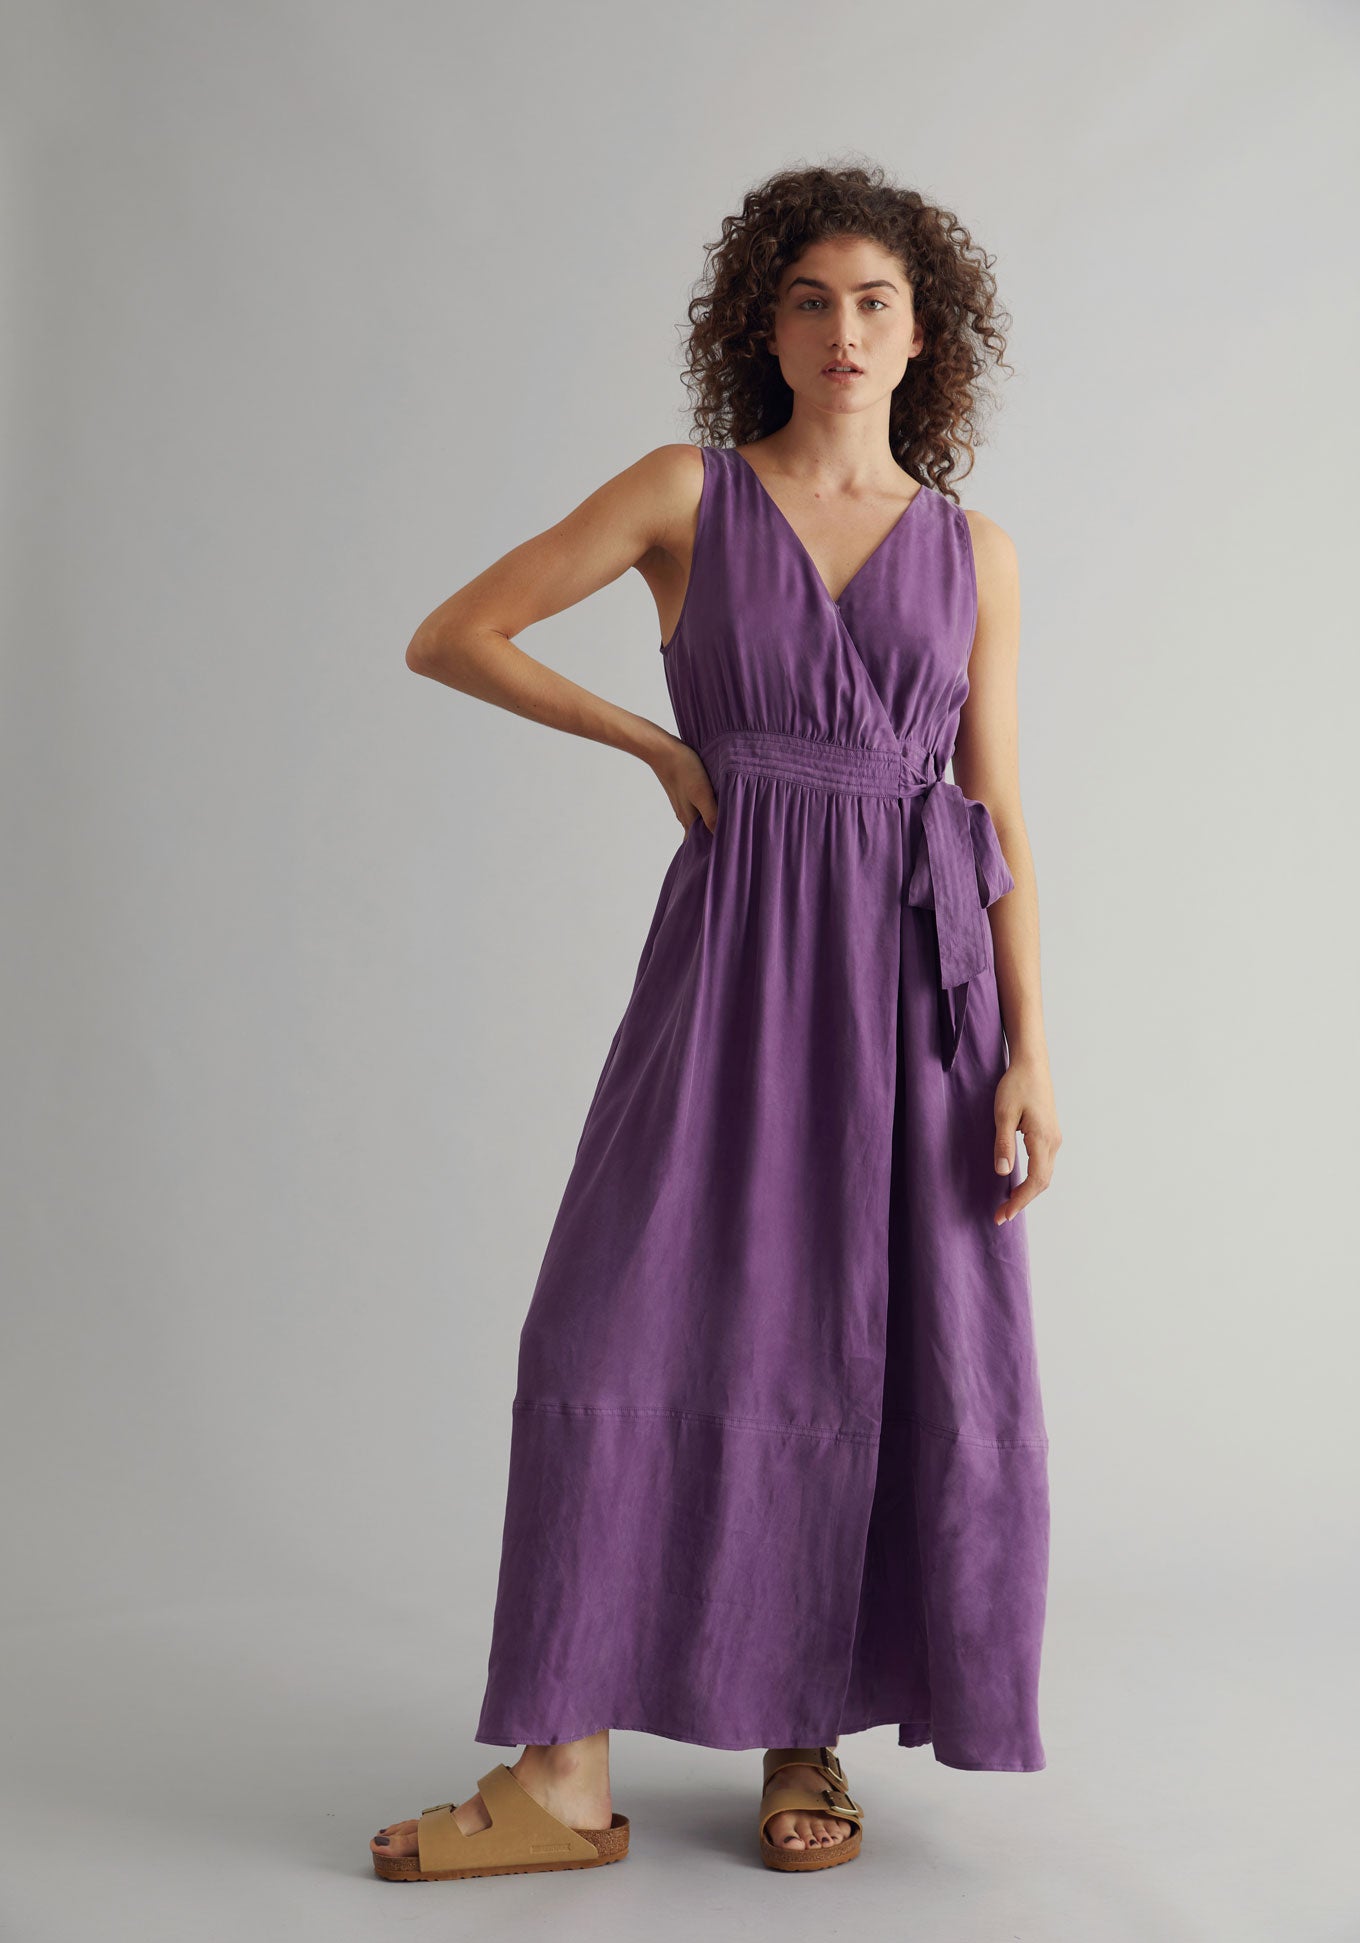 MIKA Dress - Cupro Viscose Purple, SIZE 5 / UK 16 / EUR 44